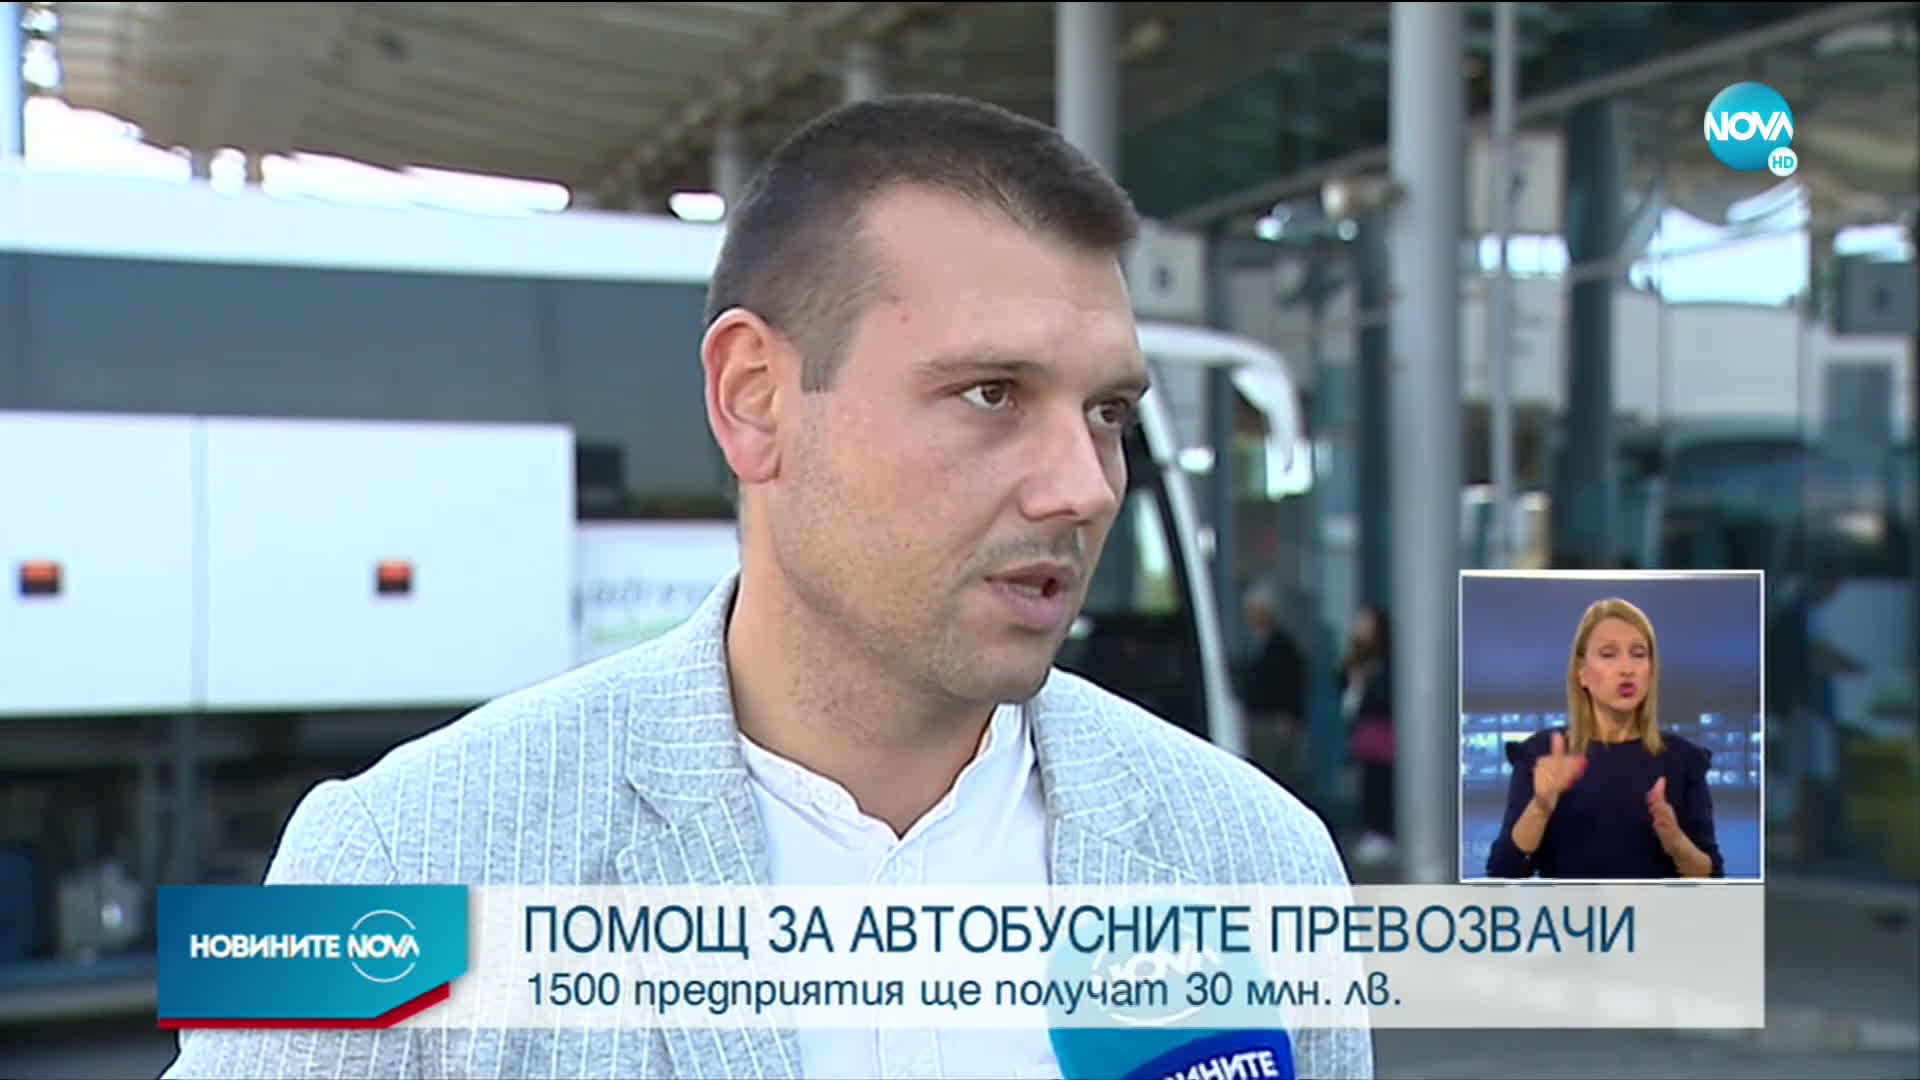 Росен Желязков: Автобусните превозвачи ще бъдат подпомогнати с 30 млн. лв.